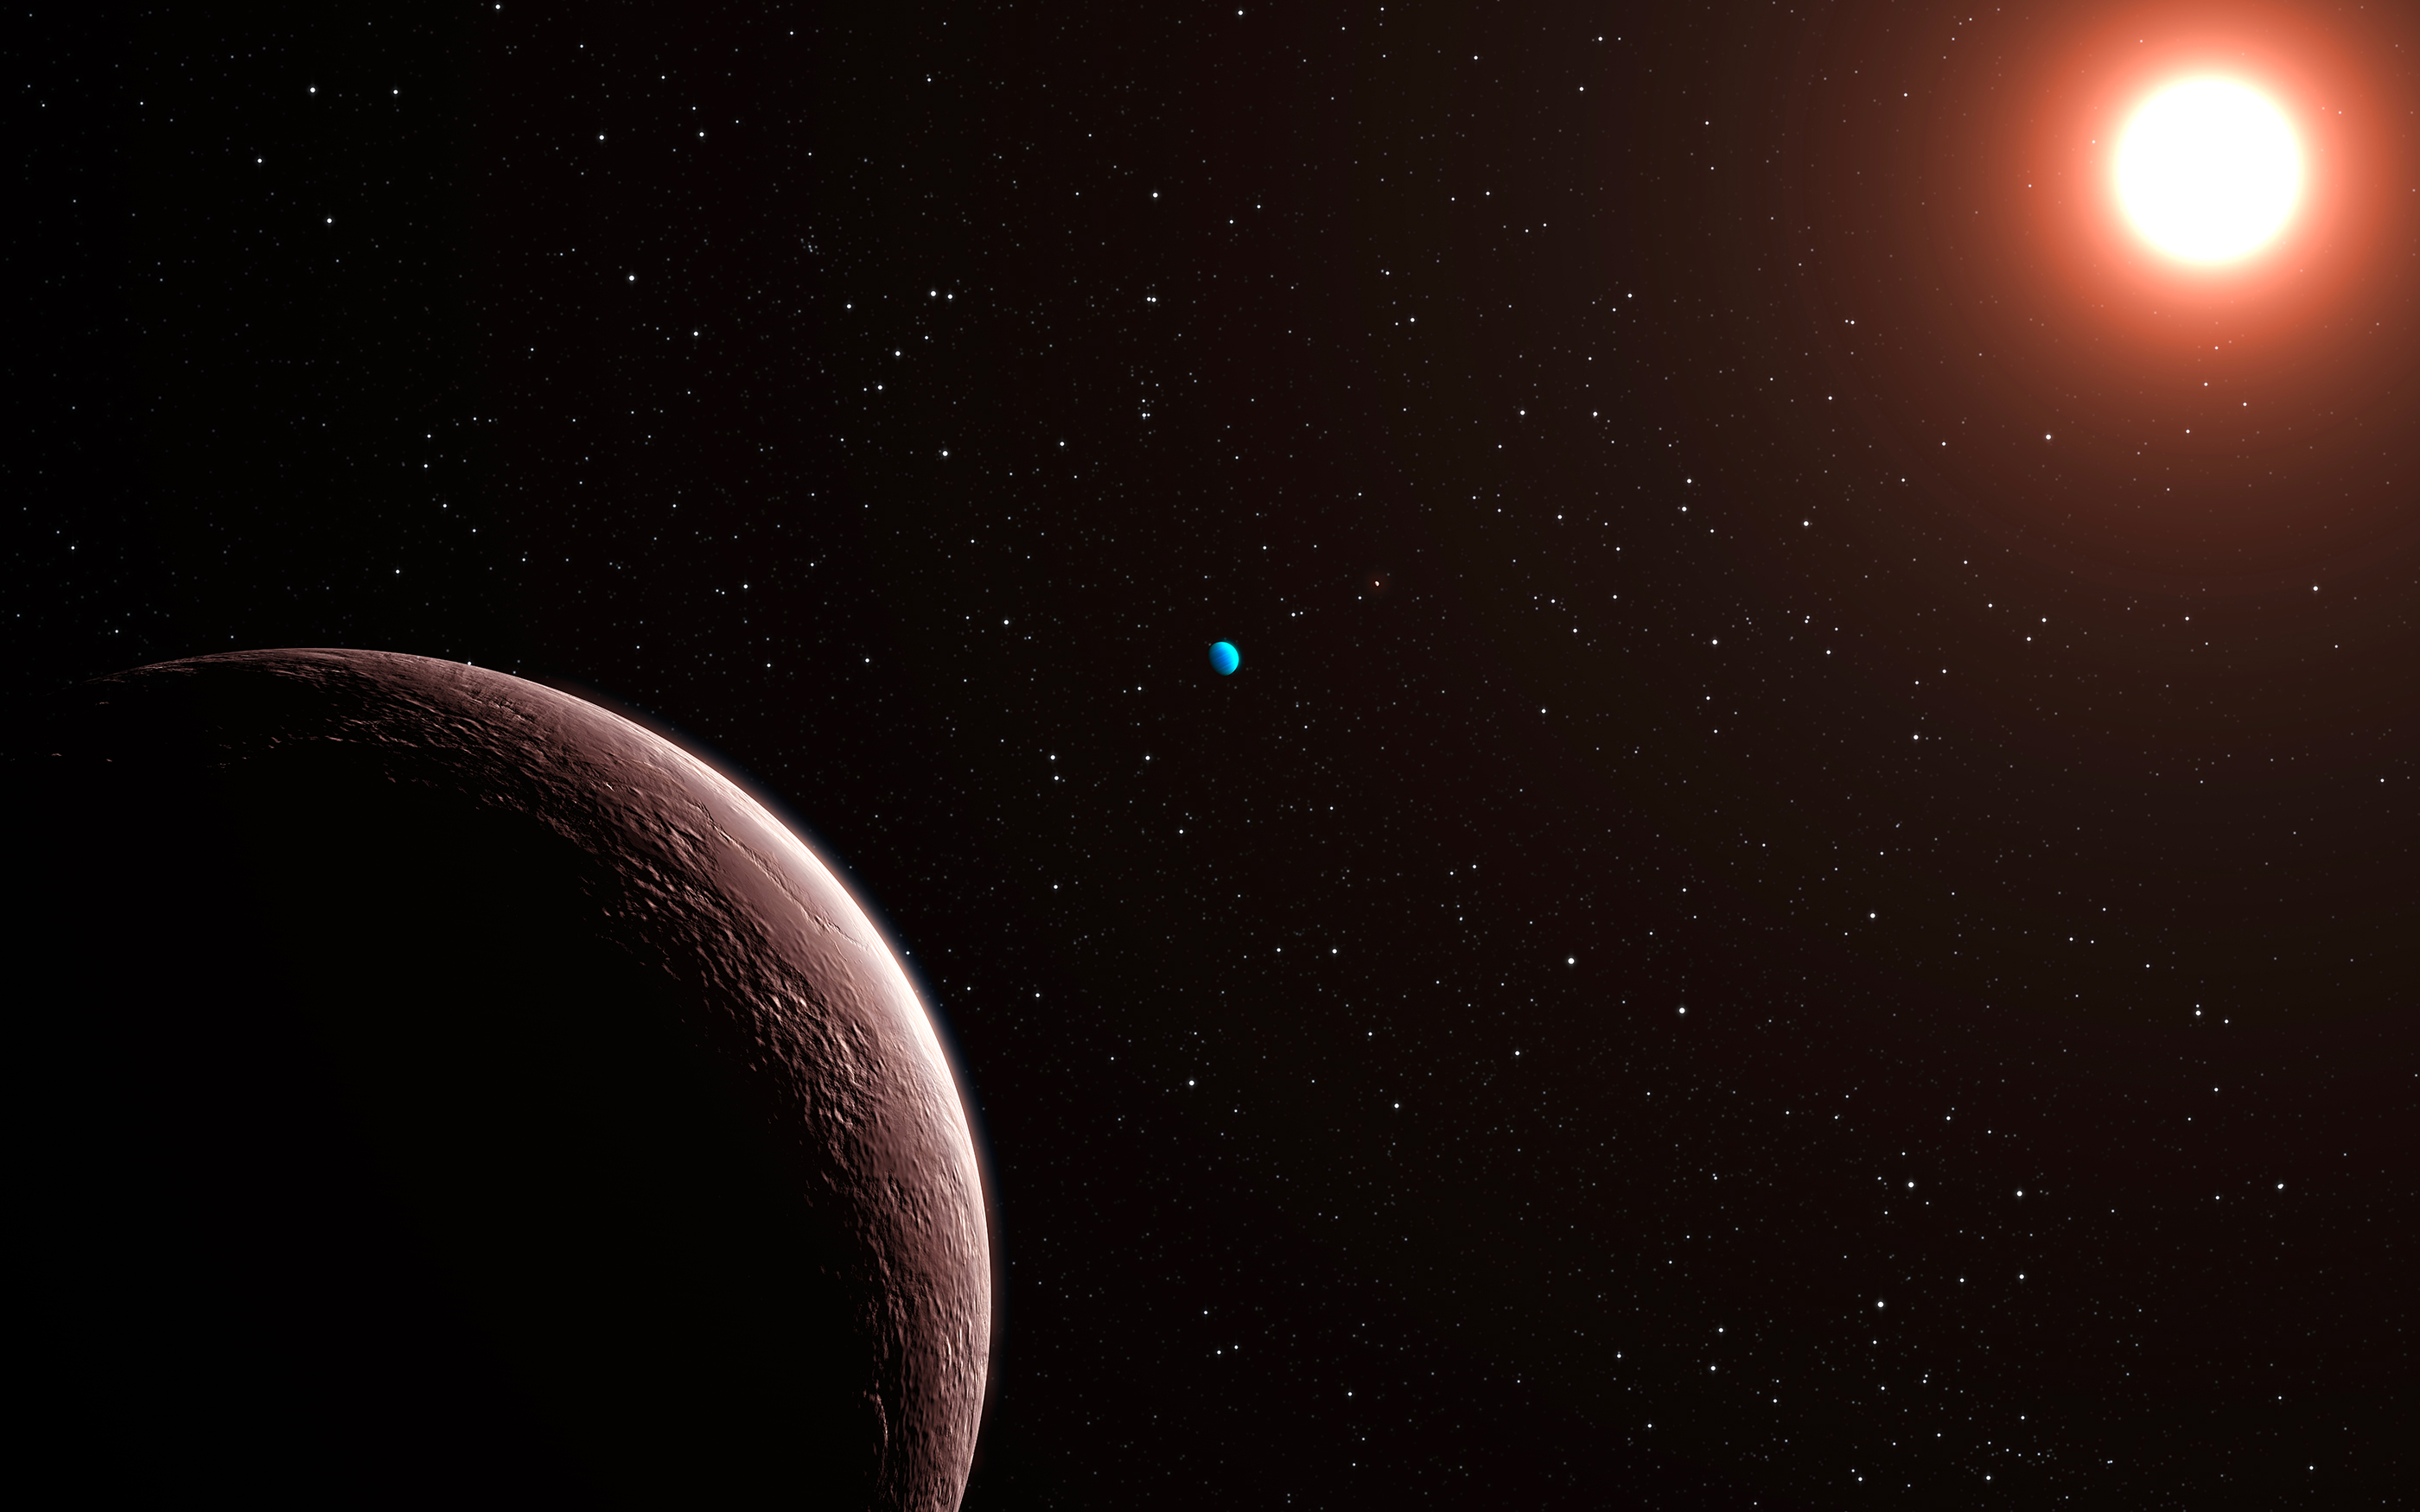 Vue d'artiste du système planétaire Gliese 581 qui a&nbsp;la particularité d'abriter l'exoplanète&nbsp;la plus légère trouvée à ce jour (2009).&nbsp;©&nbsp;ESO / L. Calçada